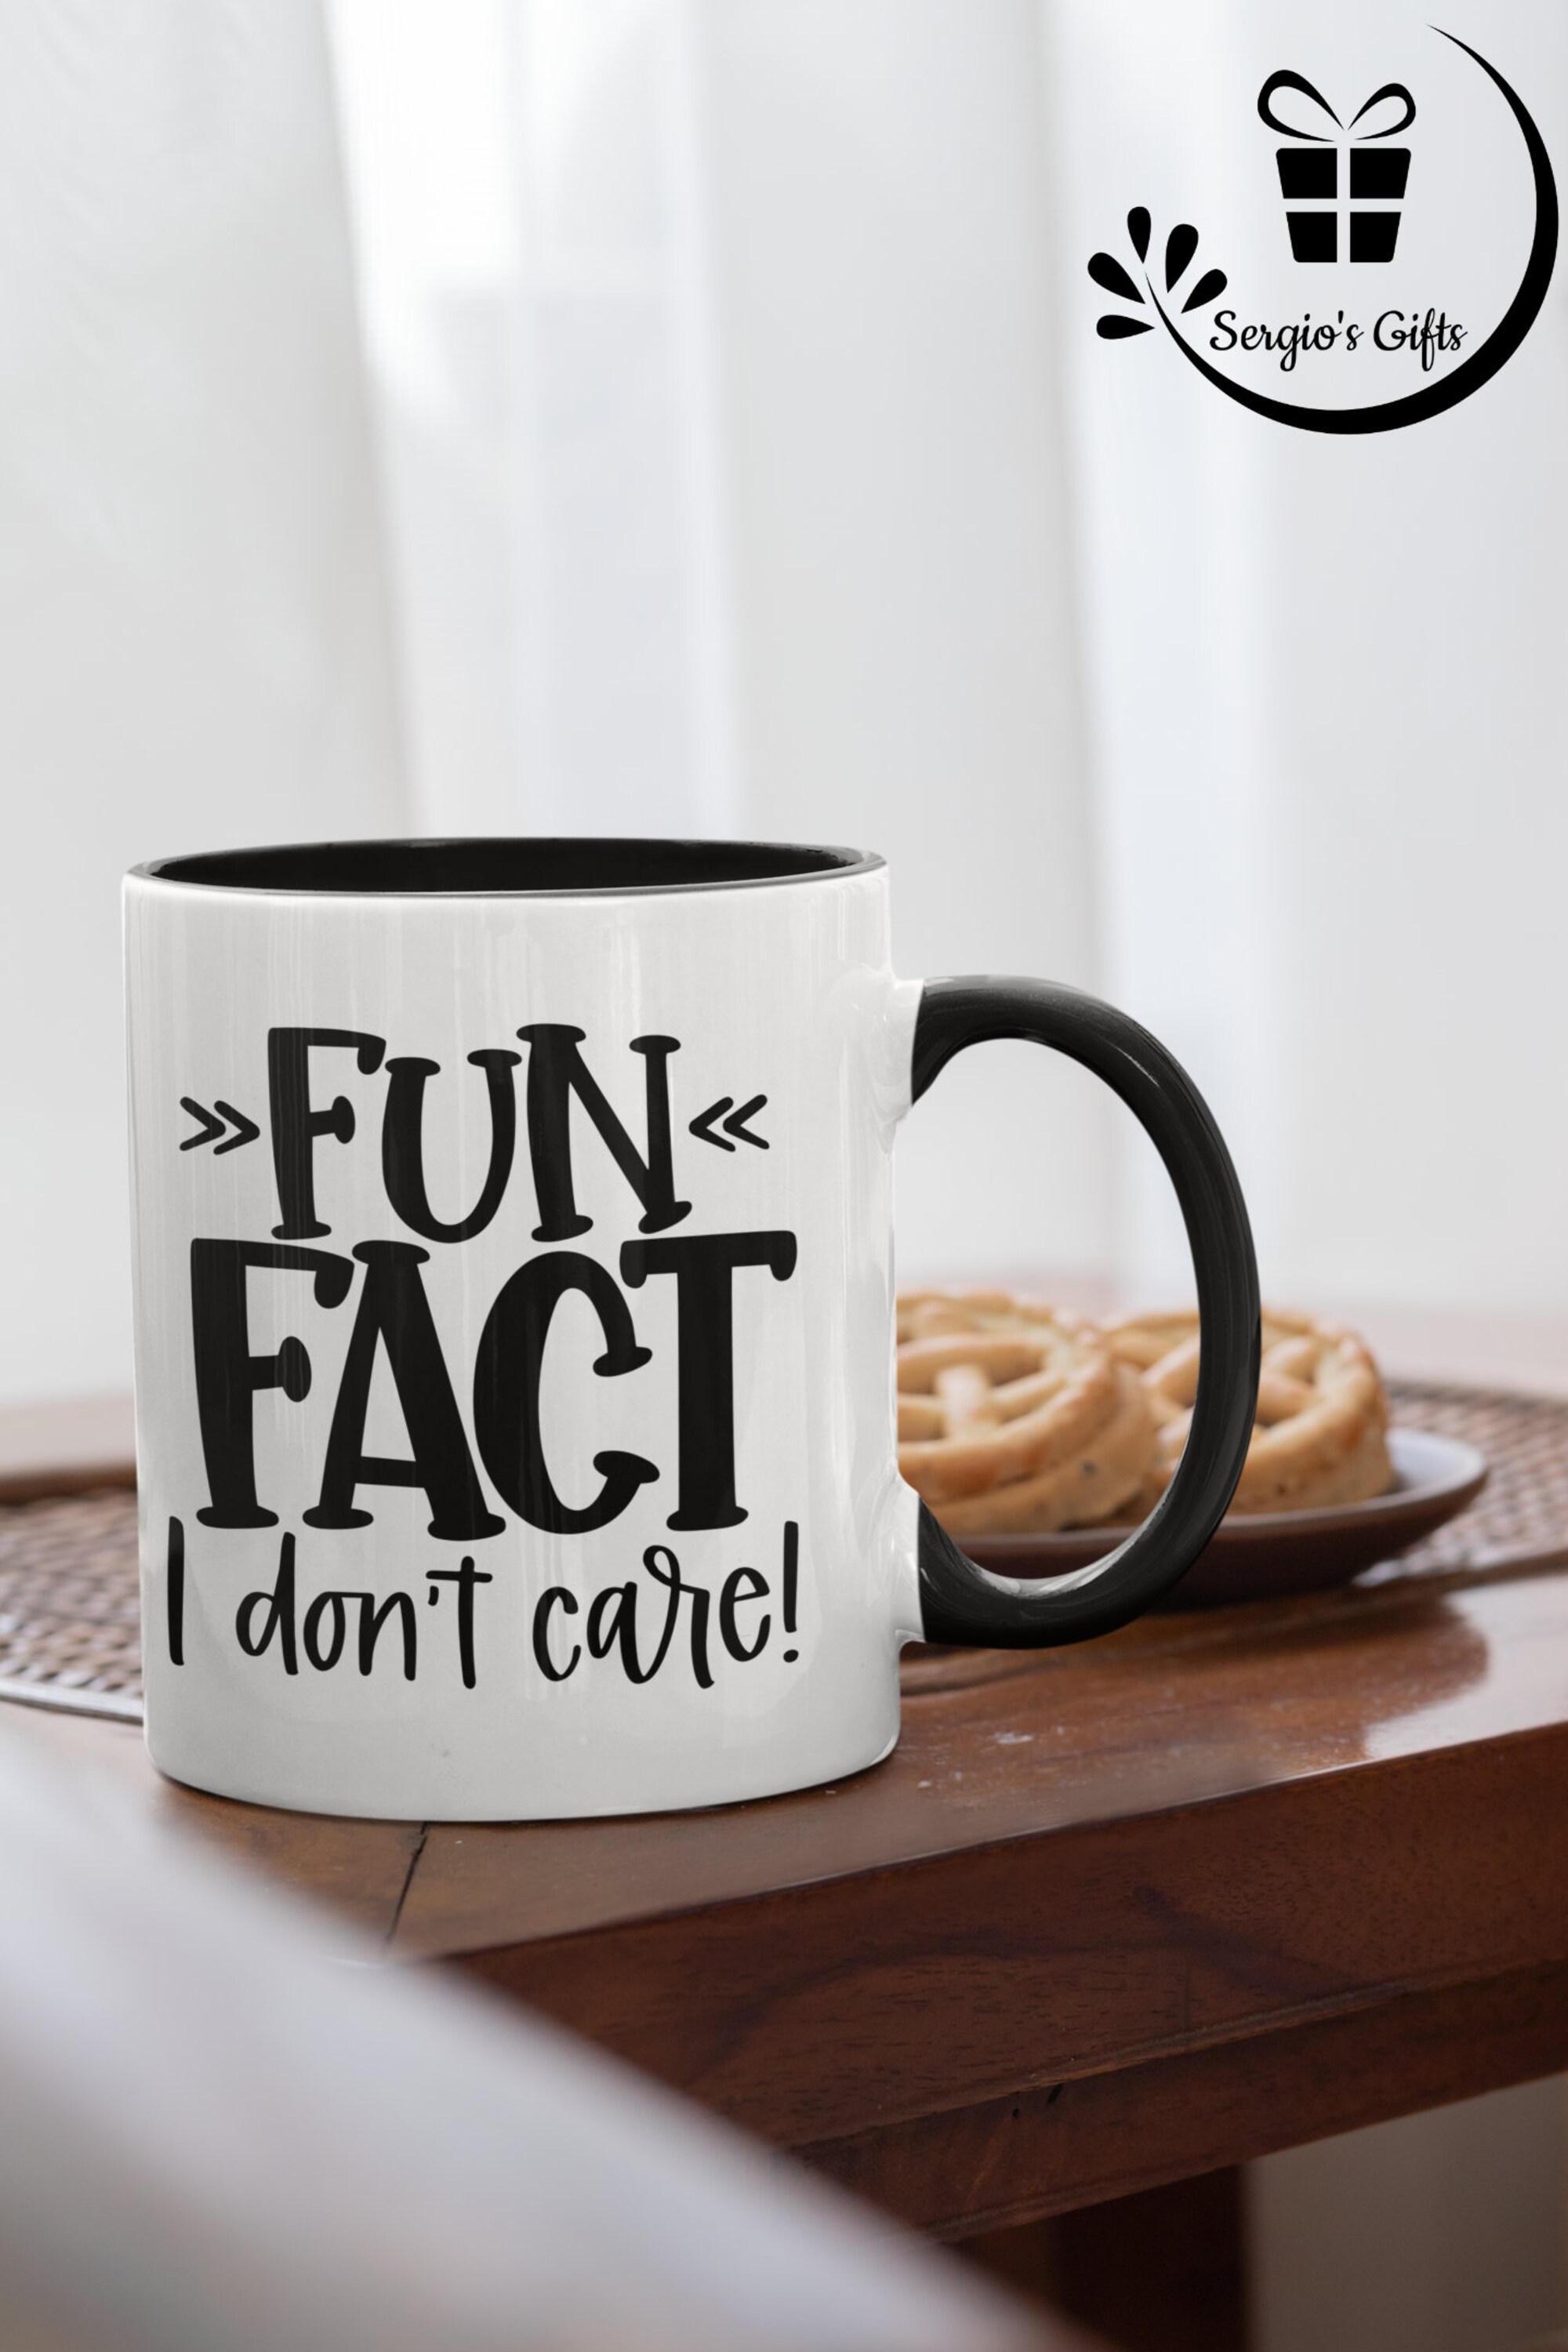 Fun Fact I don't care sarcastic mug